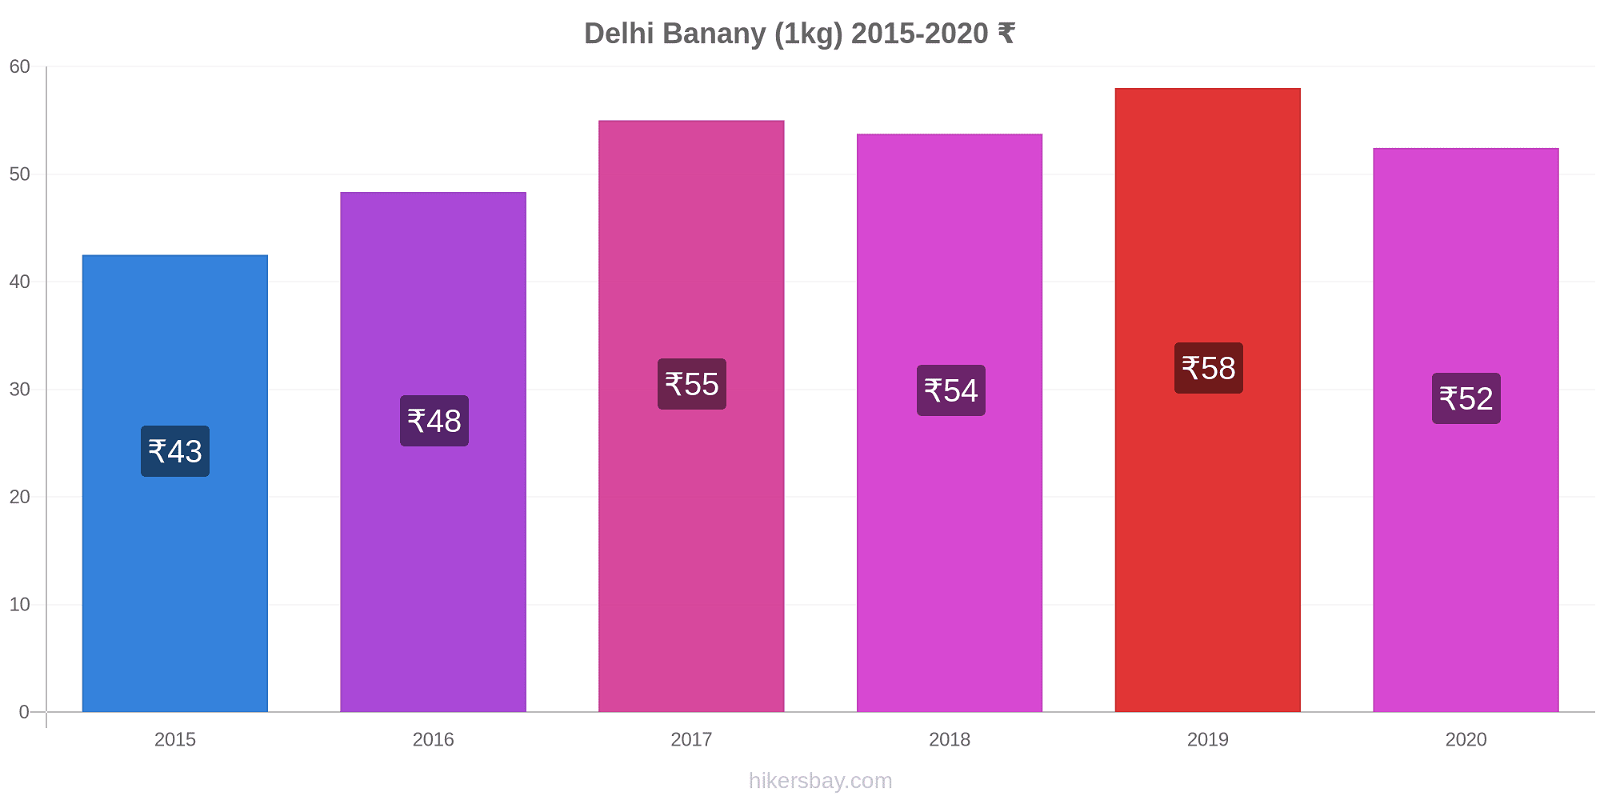 Delhi zmiany cen Banany (1kg) hikersbay.com